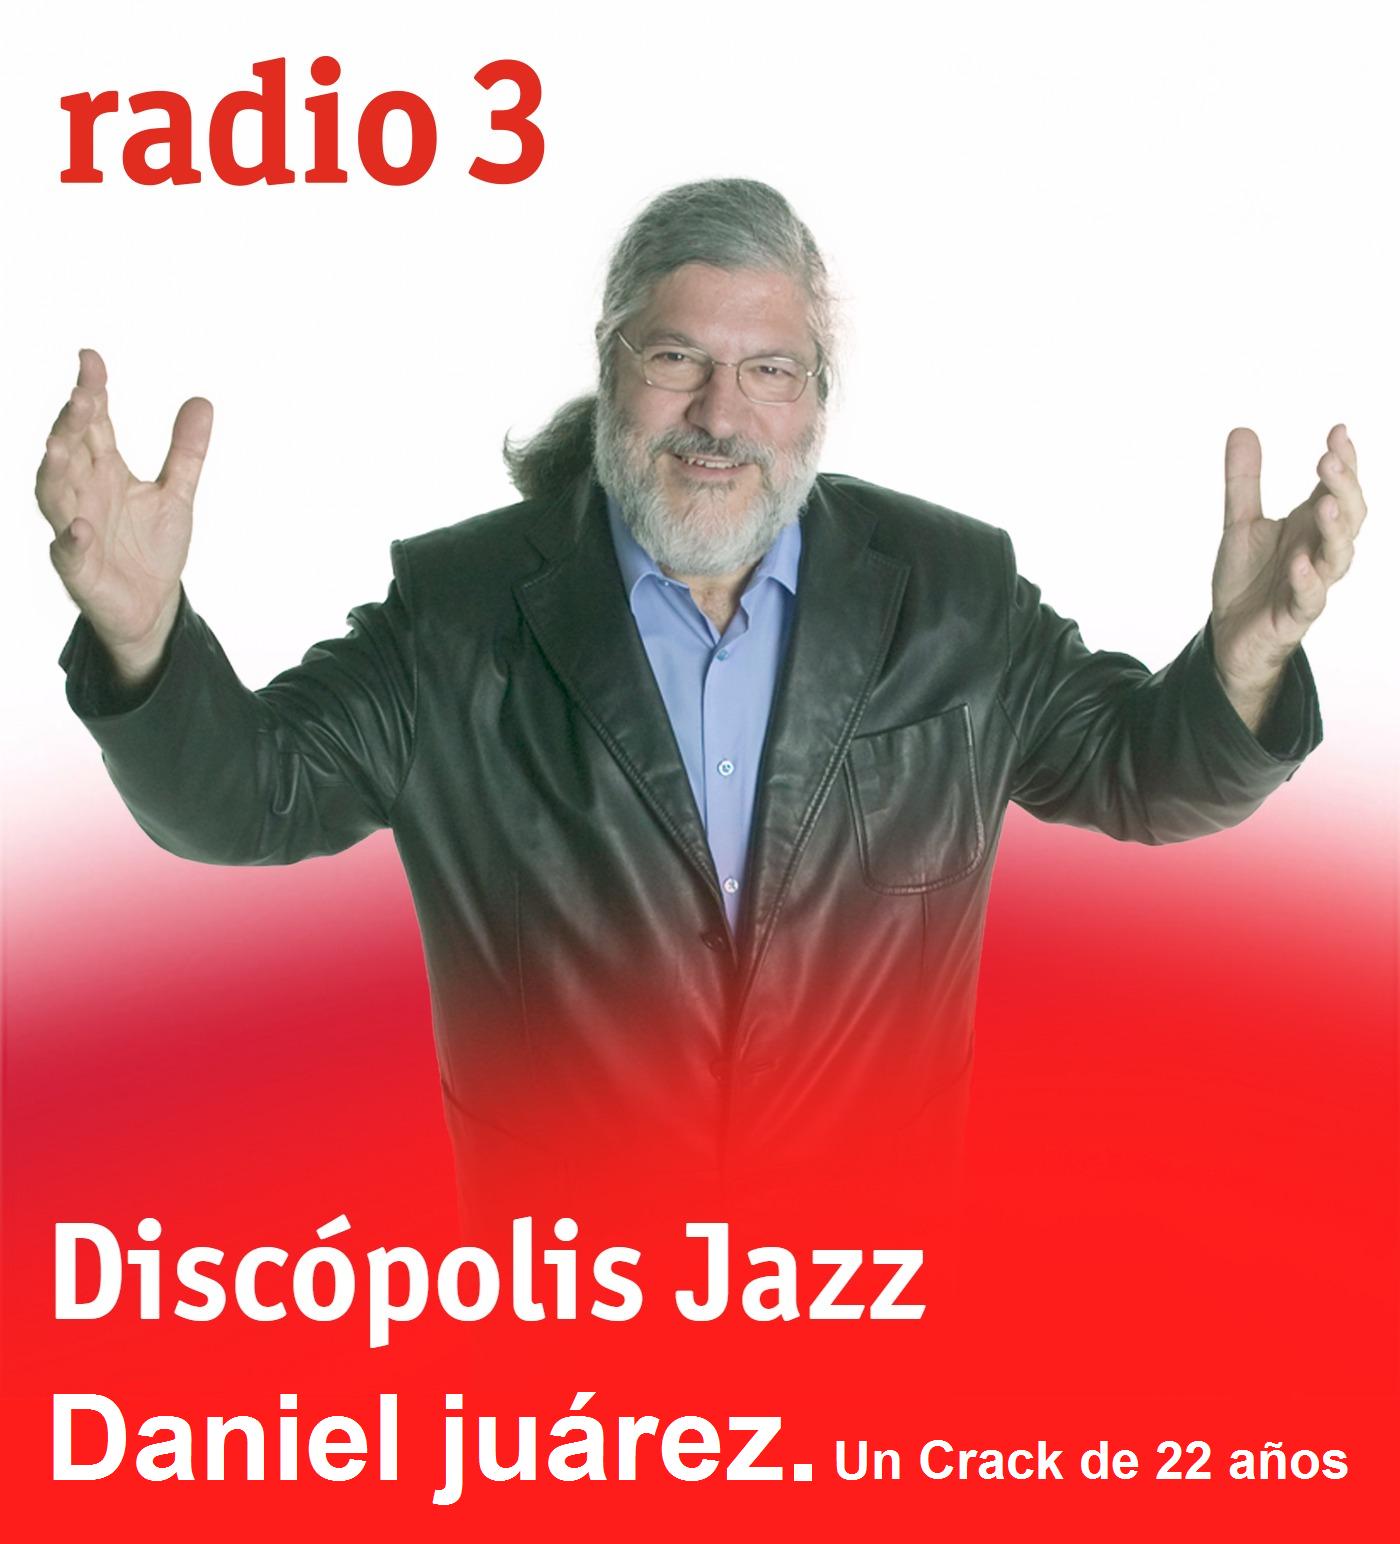 RADIO 3 ENSALZA A DANIEL JUÁREZ Y SU CD "CAMINOS"